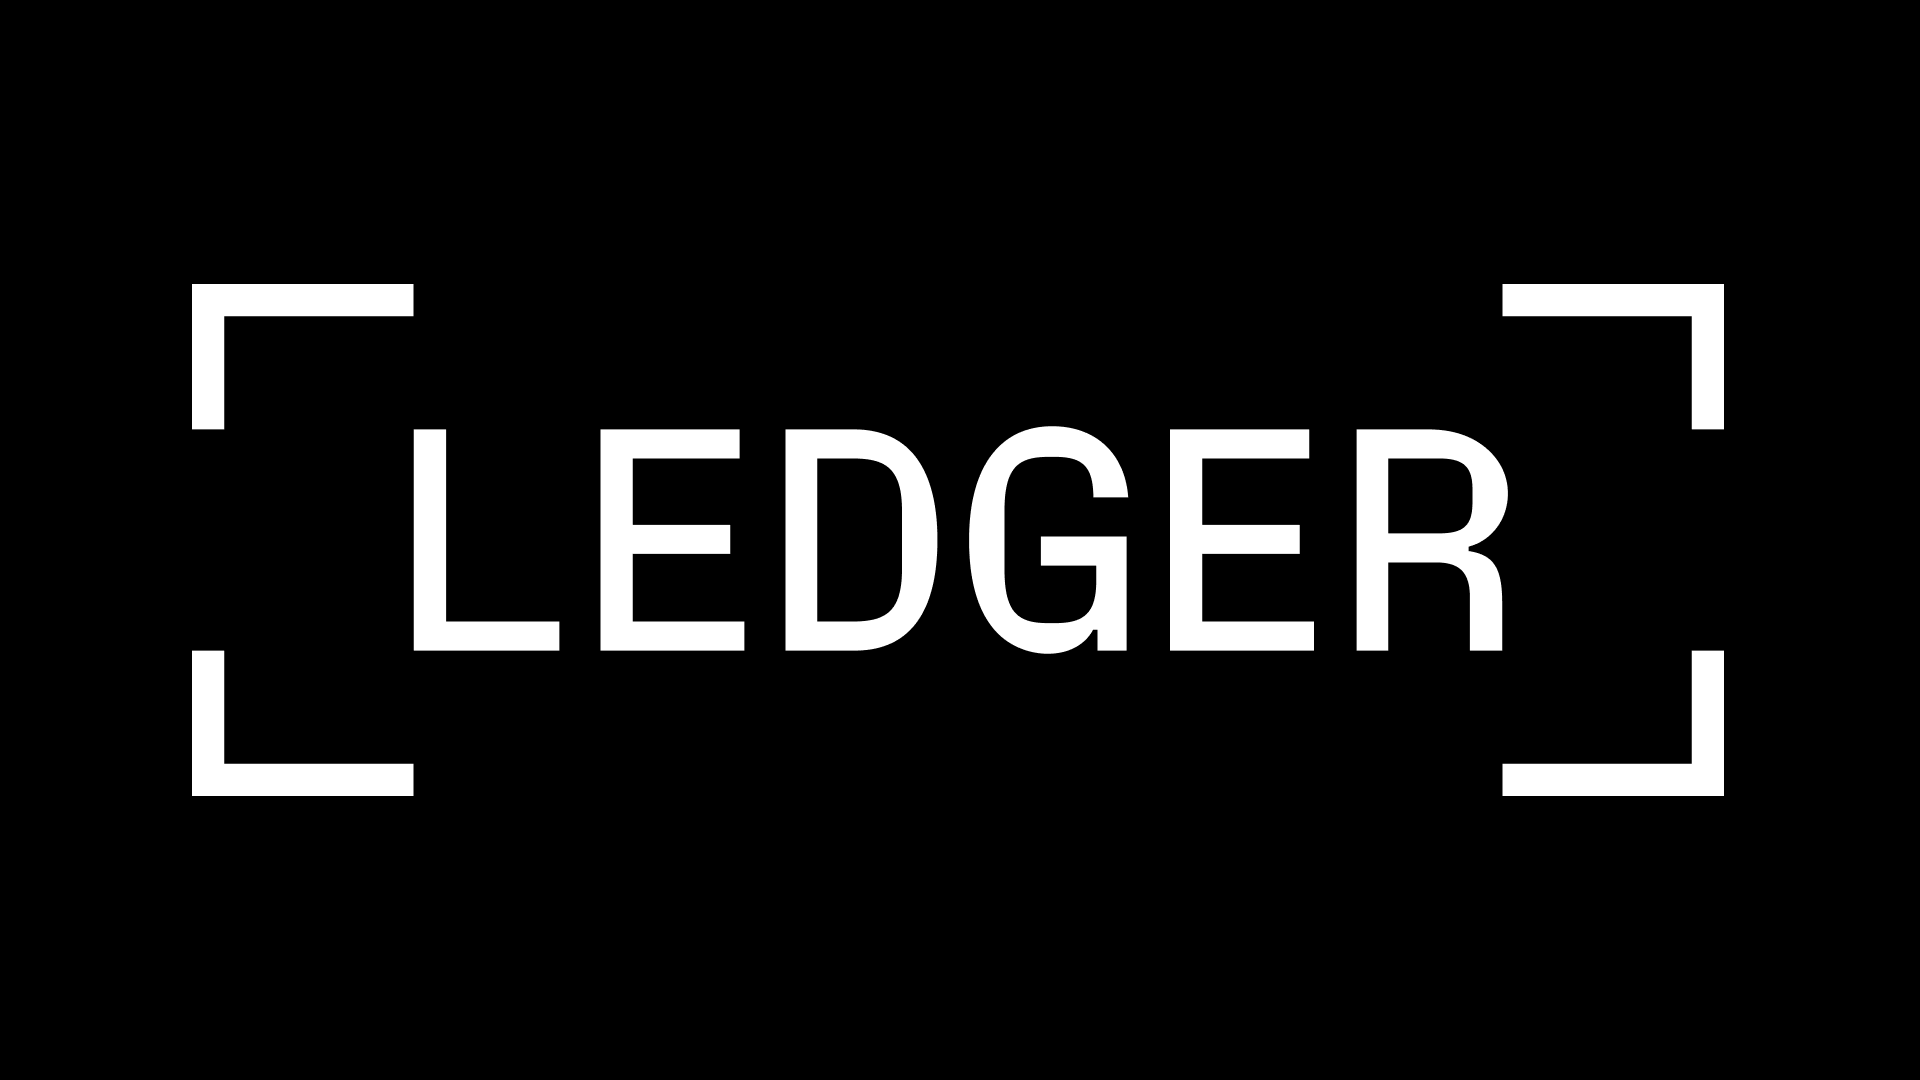 www.ledger.com